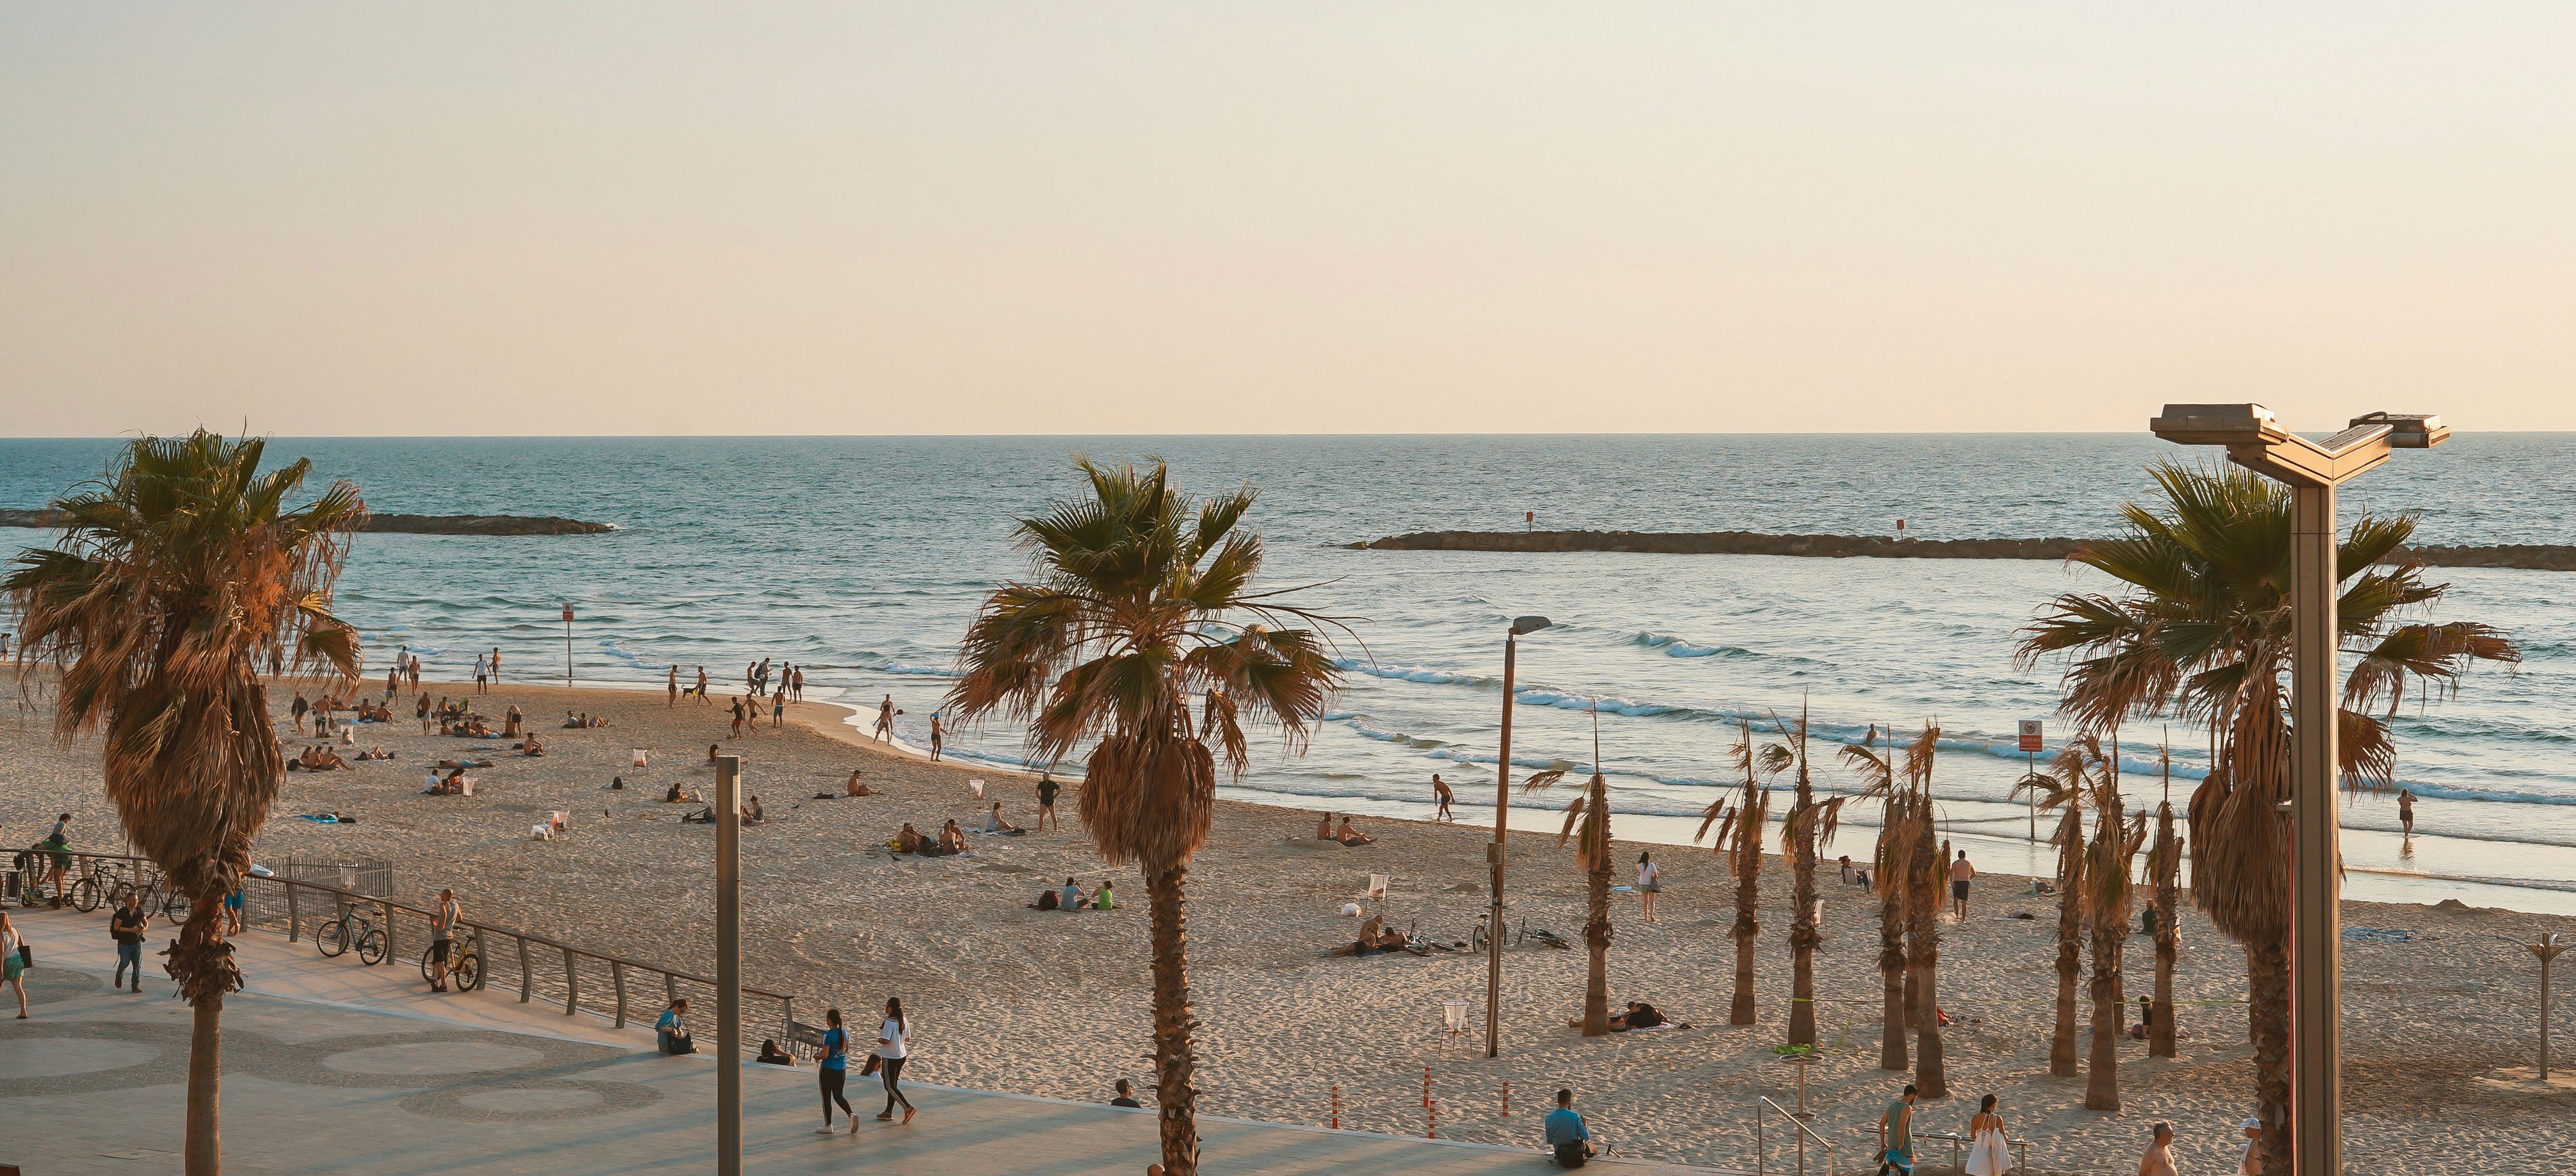 Strand in Tel Aviv bei Sonnenuntergang. Im Vordergund 3 Palmen, im Hintergrund das Mittelmeer, ganz leichter Wellengang.